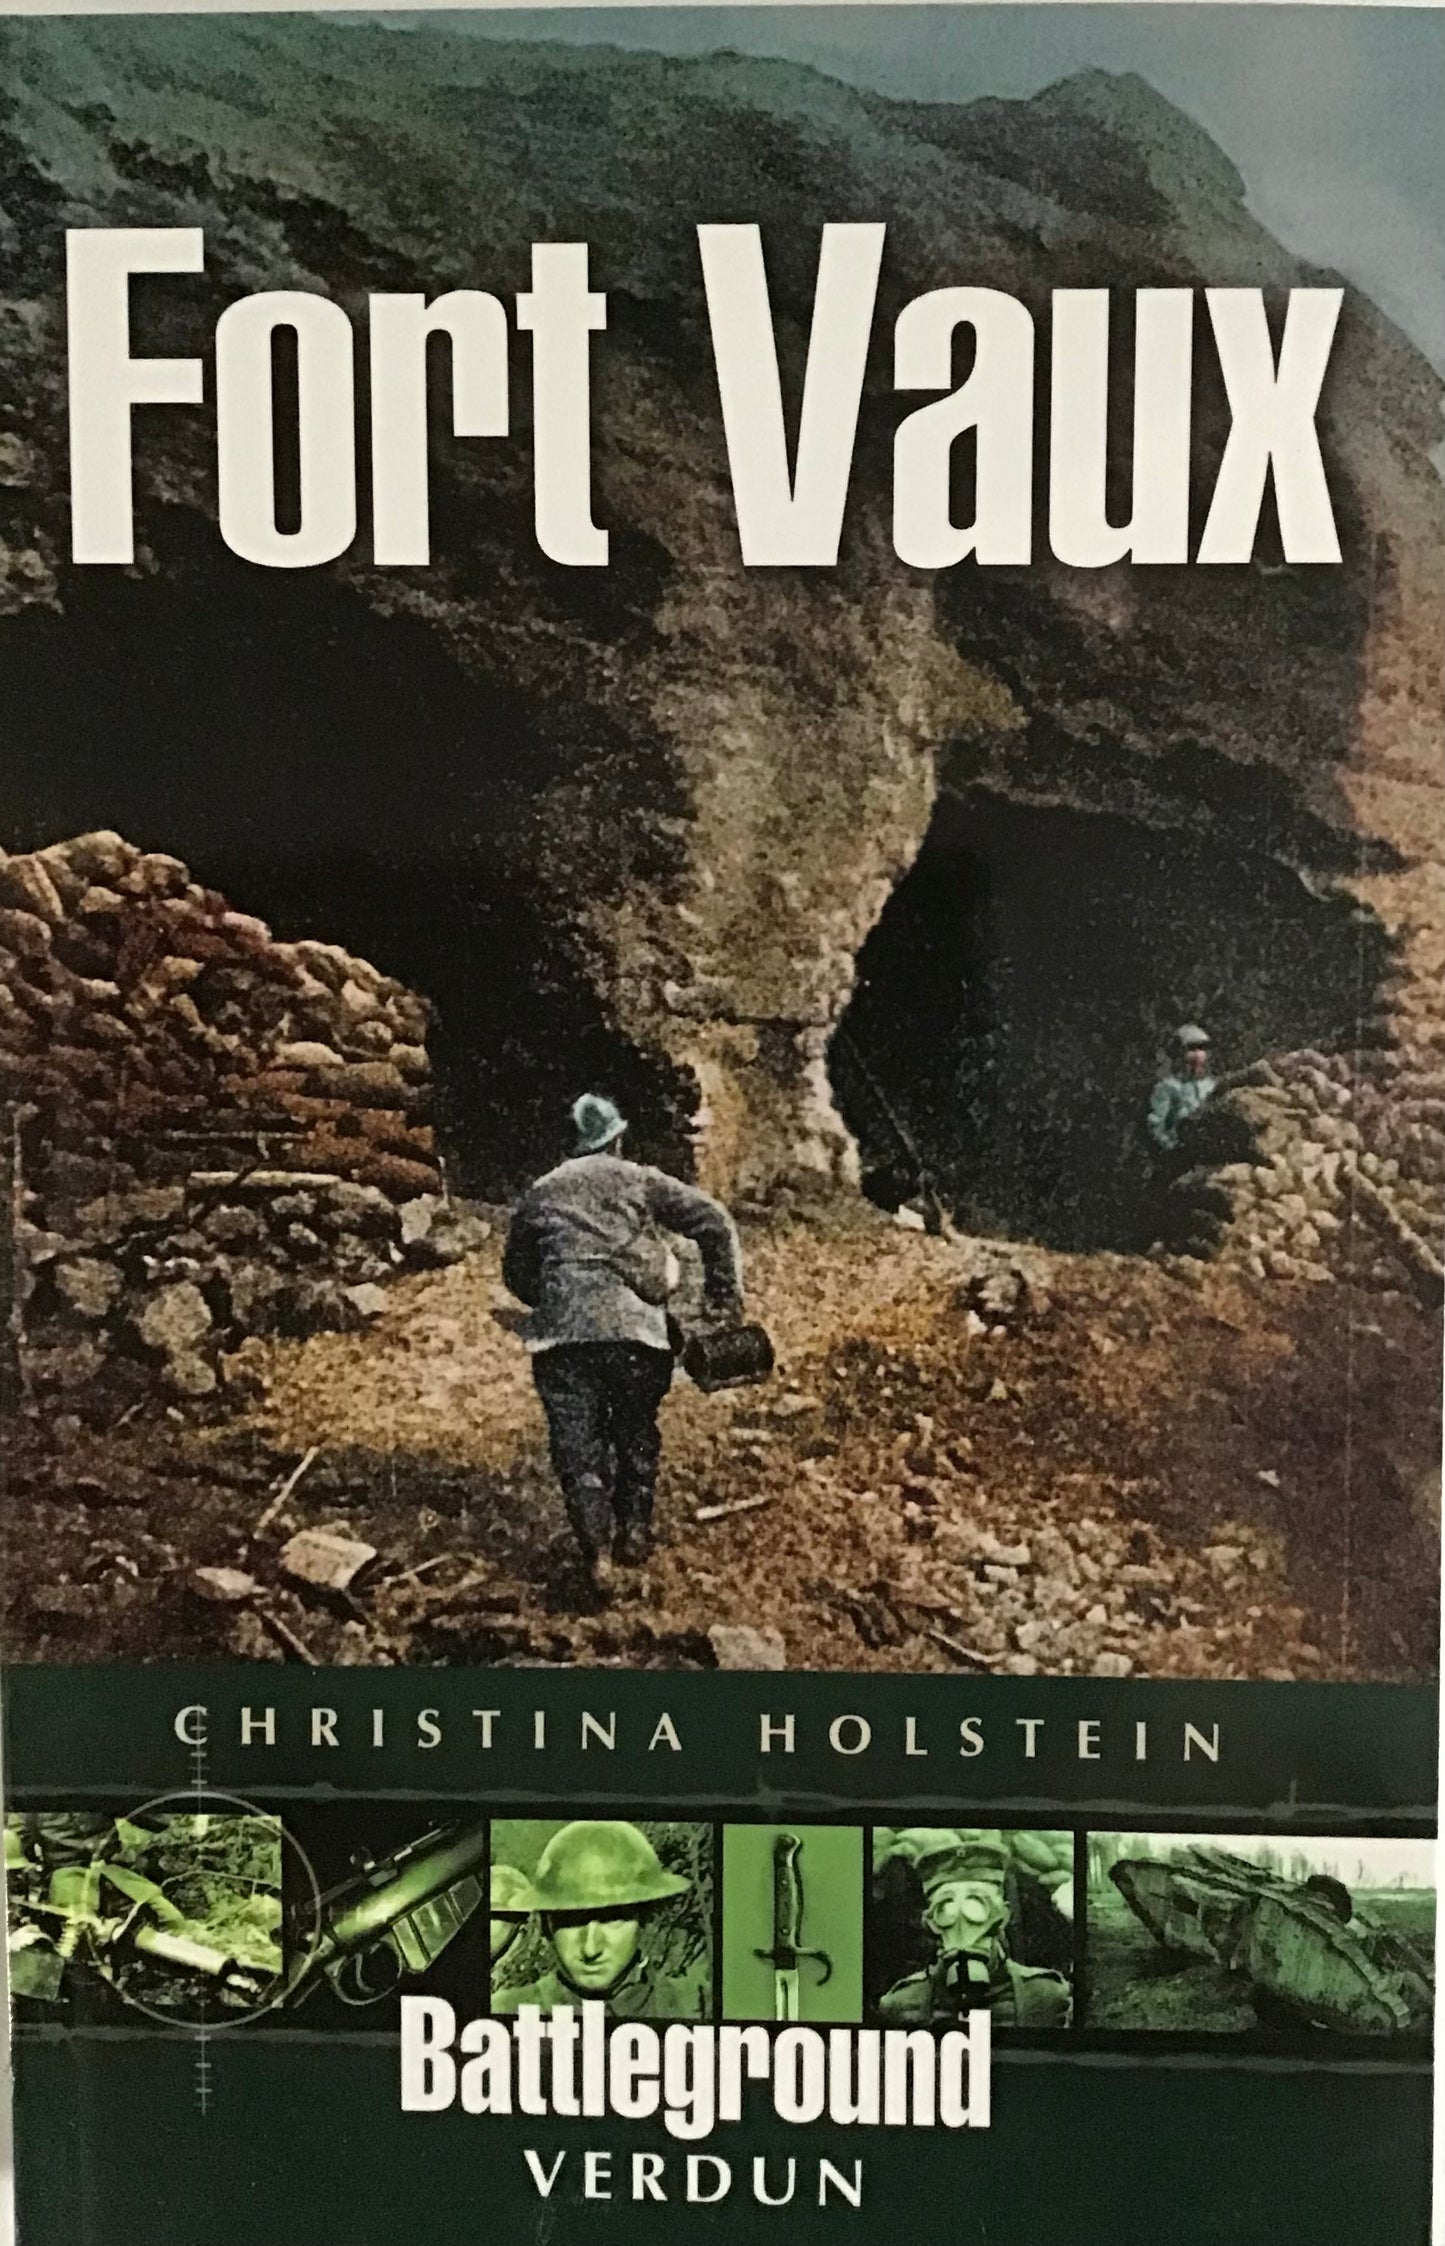 Verdun Fort Vaux by Christina Holstein - Chester Model Centre